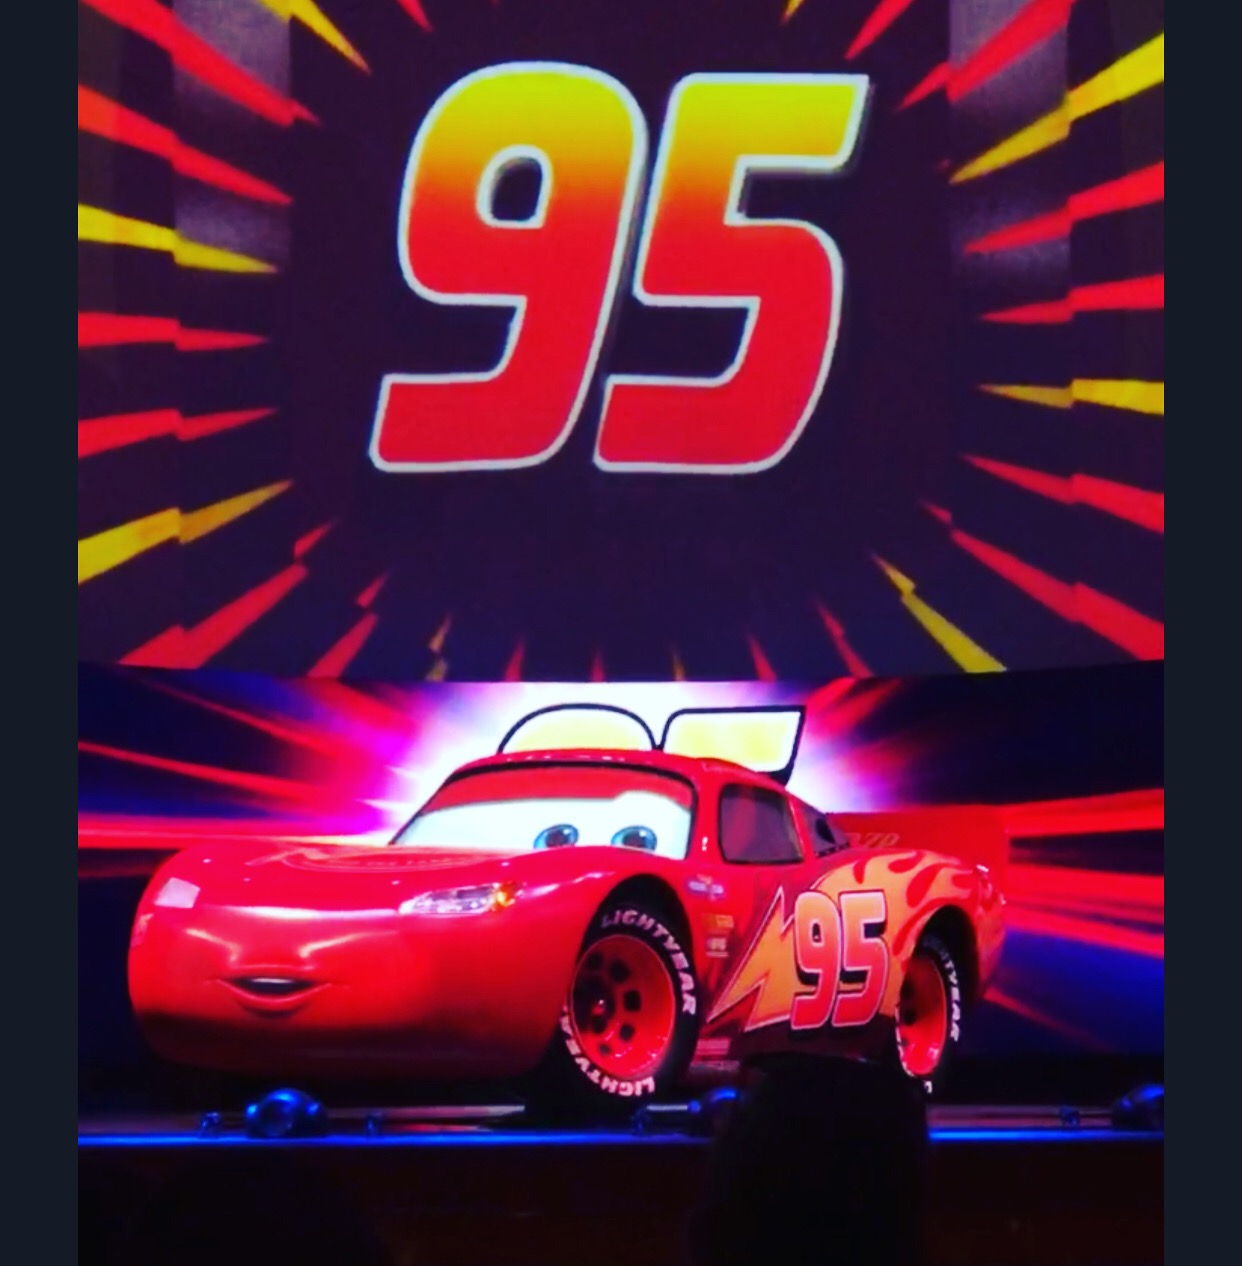 Lightning McQueen’s Racing Academy in Hollywood Studios